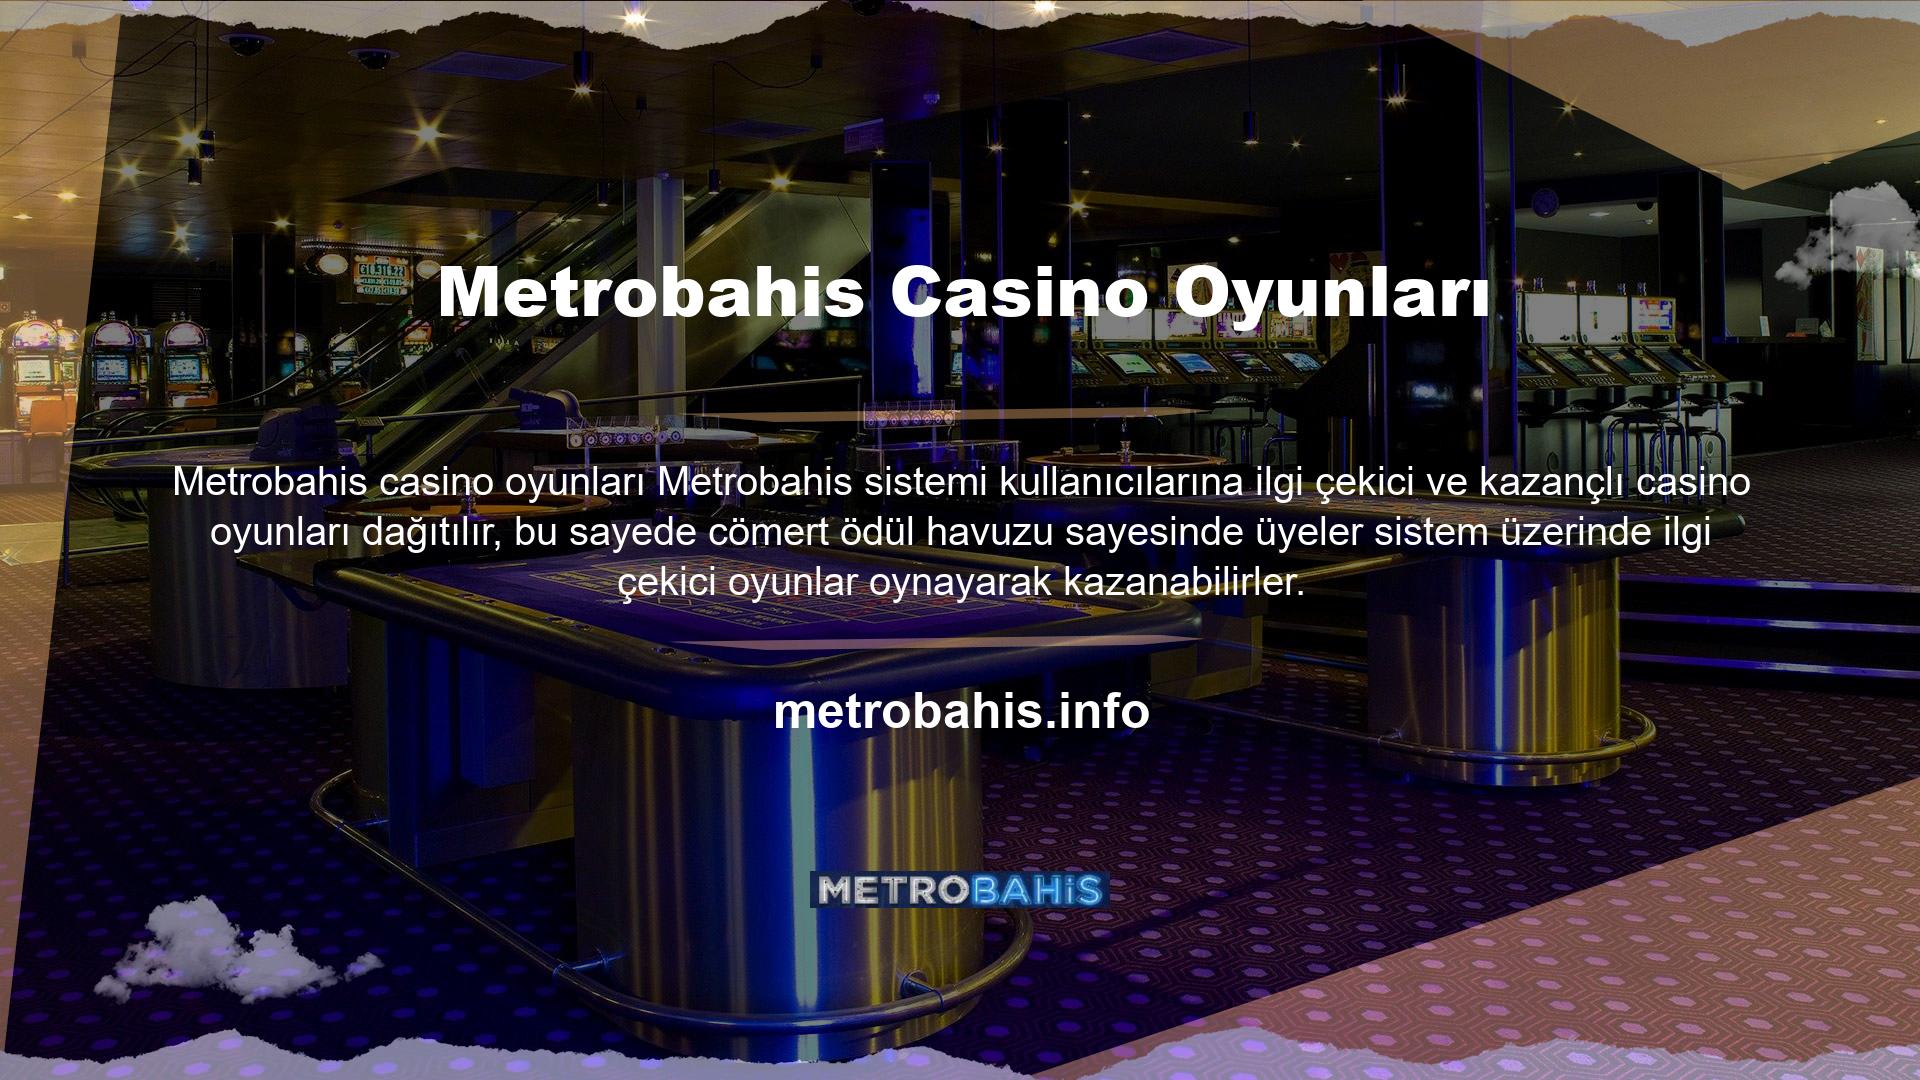 Üyeler, Metrobahis Casino platformunda Slot, Poker, Rulet, Blackjack, Bingo, Türk Pokeri ve daha birçok oyunu oynayabilirler